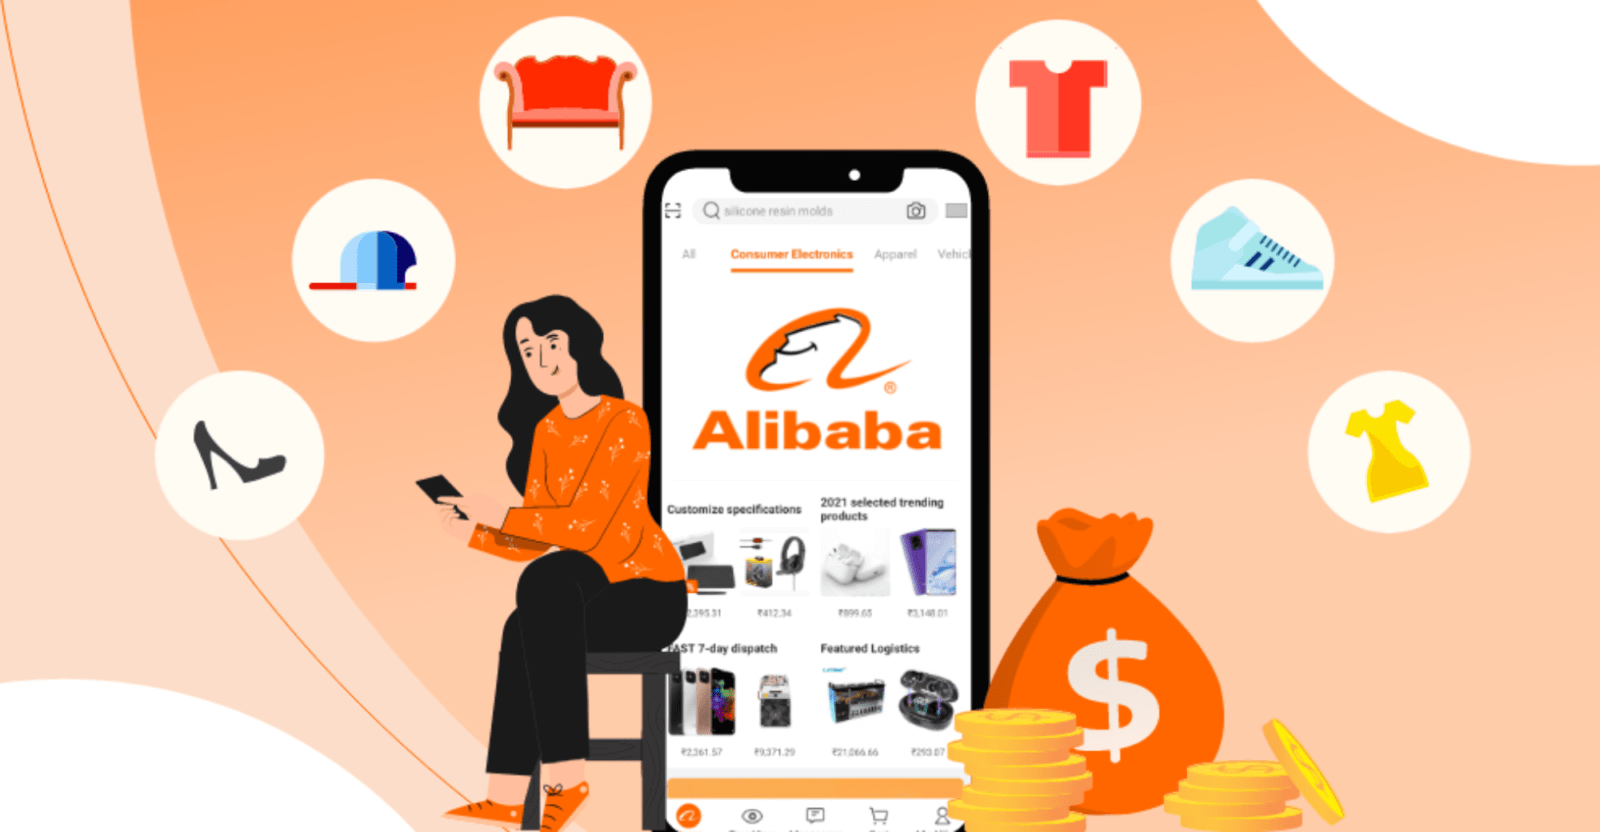 Нарисованная девушка сидит рядом с большим смартфоном, на экране которого магазин Alibaba